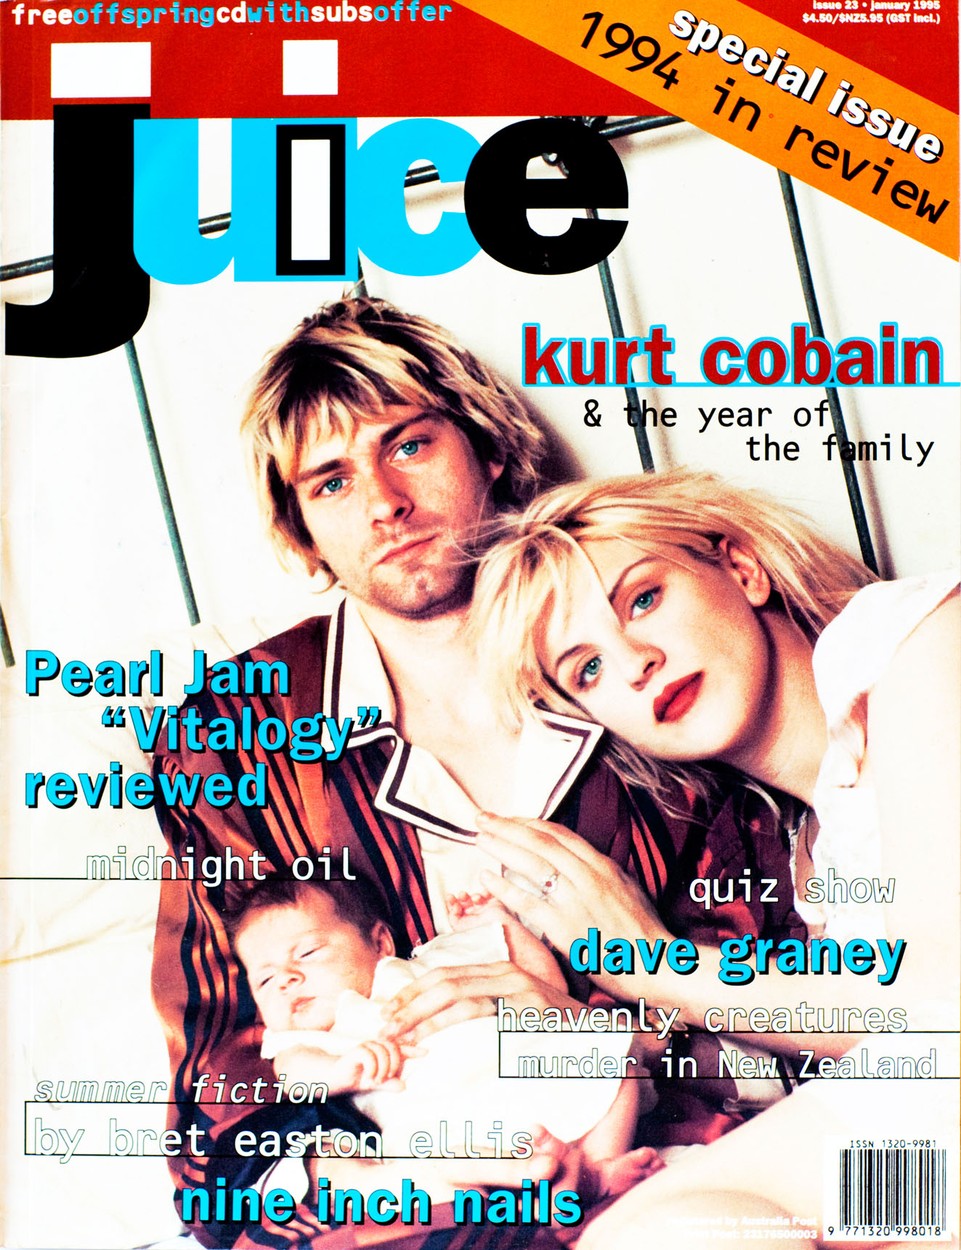 50 éves lenne Kurt Cobain- 7 emlékezetes fotó a zenészről